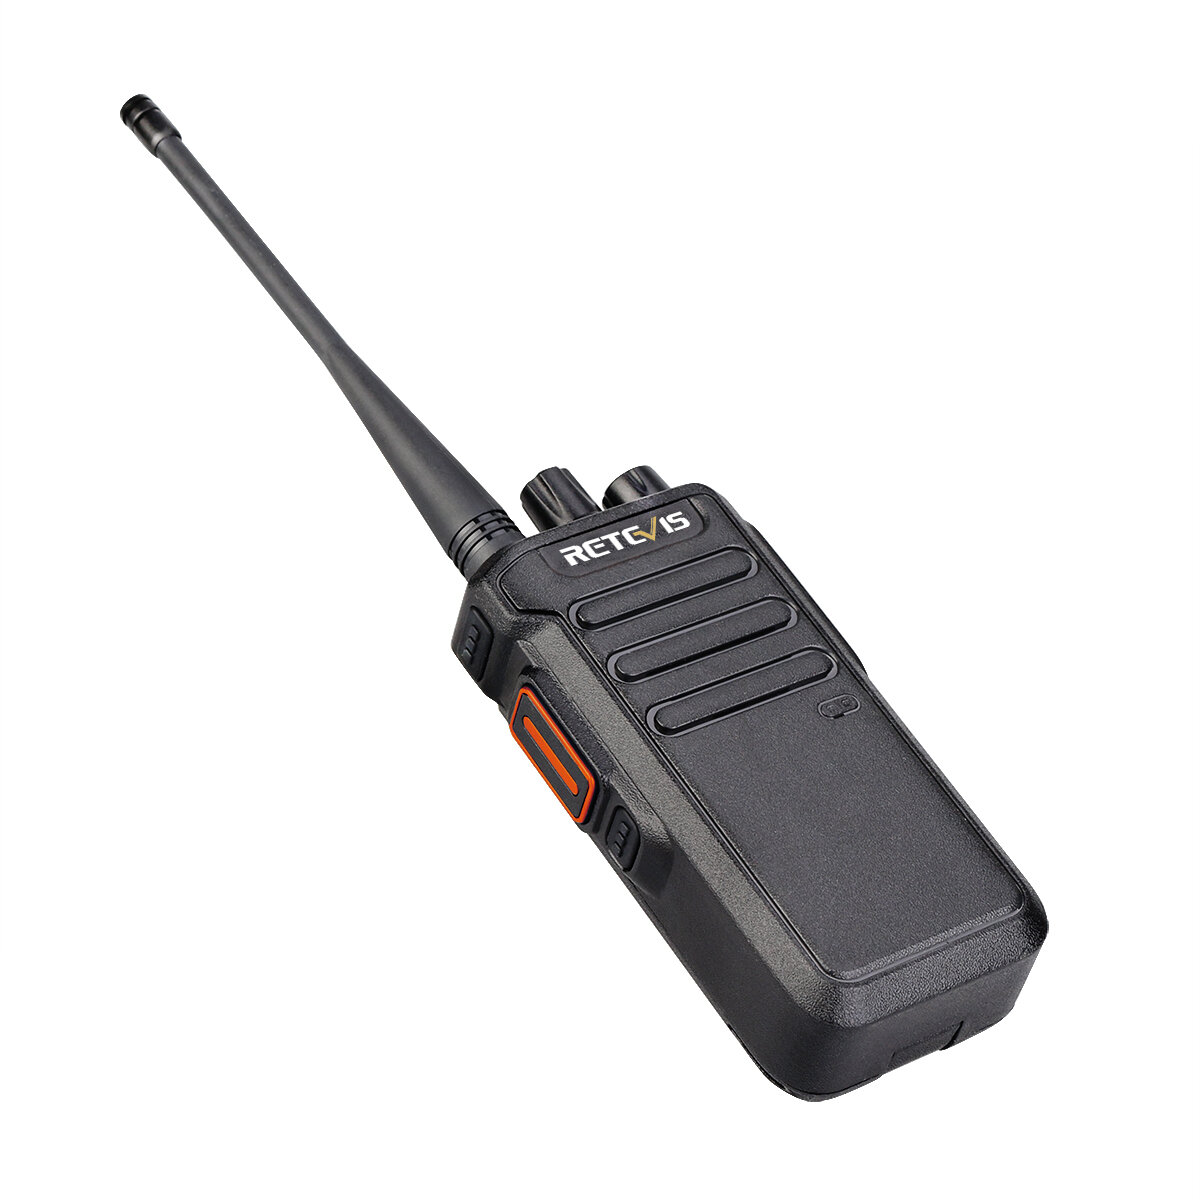 Retevis RT43 5W Walkie Talkie UHF 400-480MHz 32-kanaals DMR Digitale tweerichtingsradio UHF-radio me